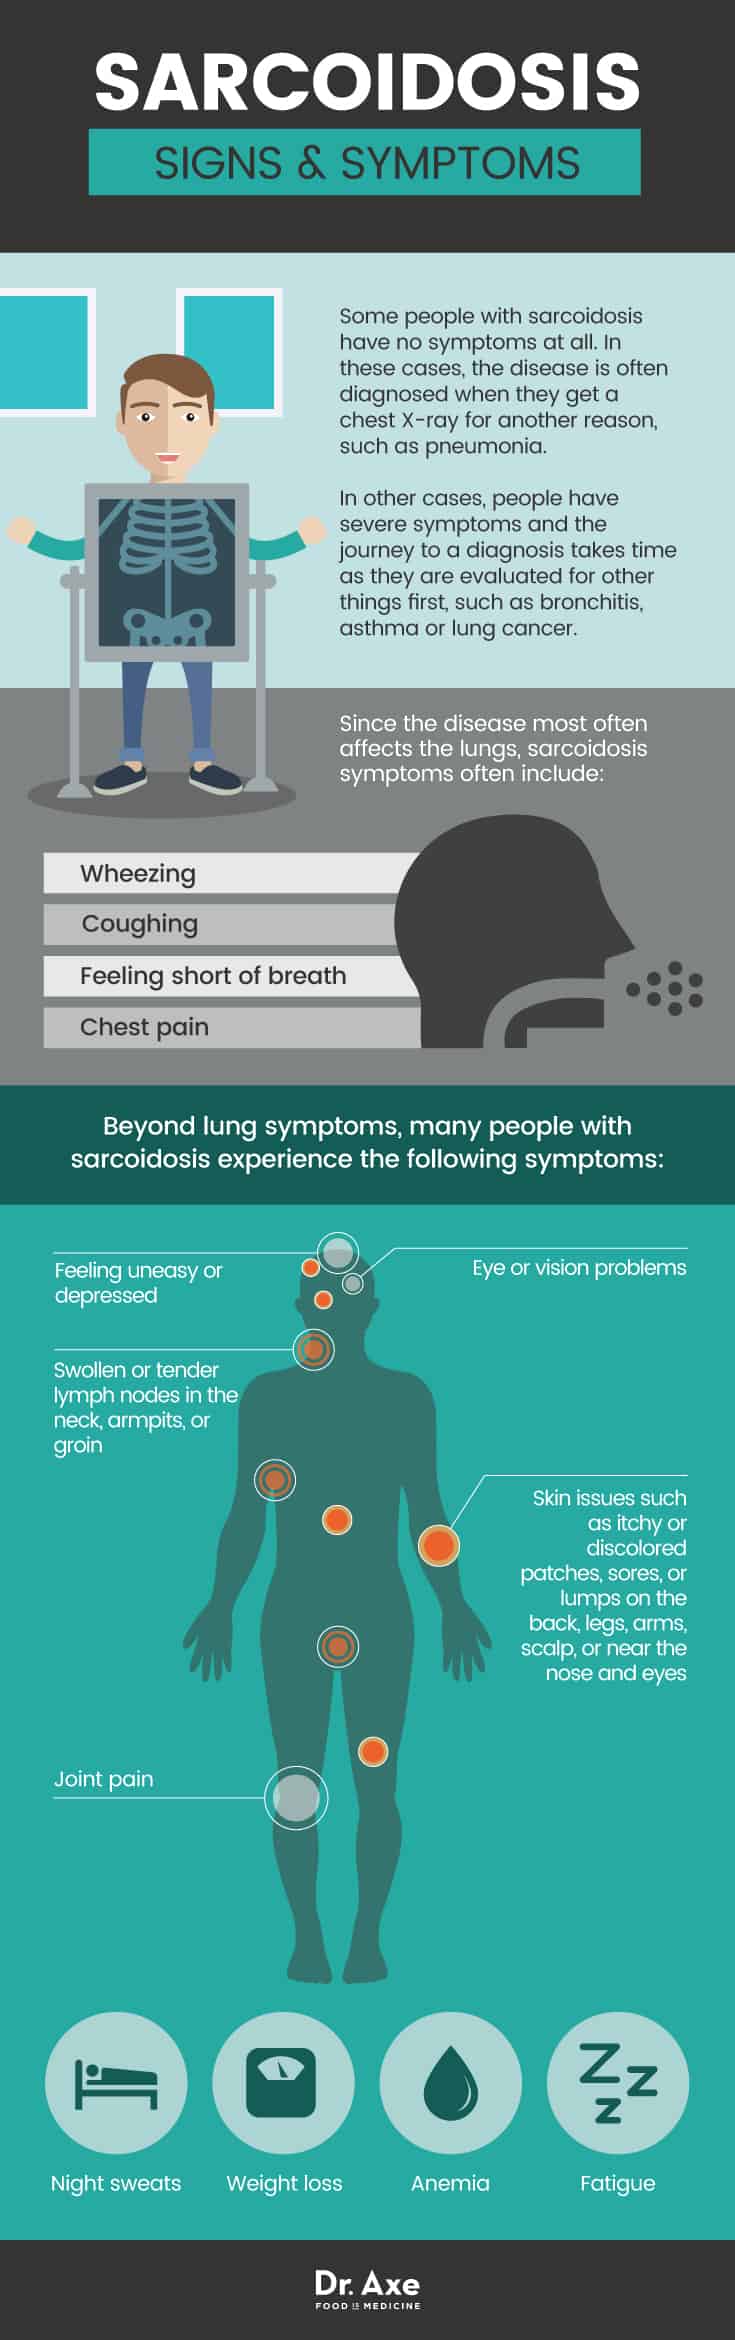 Sarcoidosis signs & symptoms - Dr. Axe